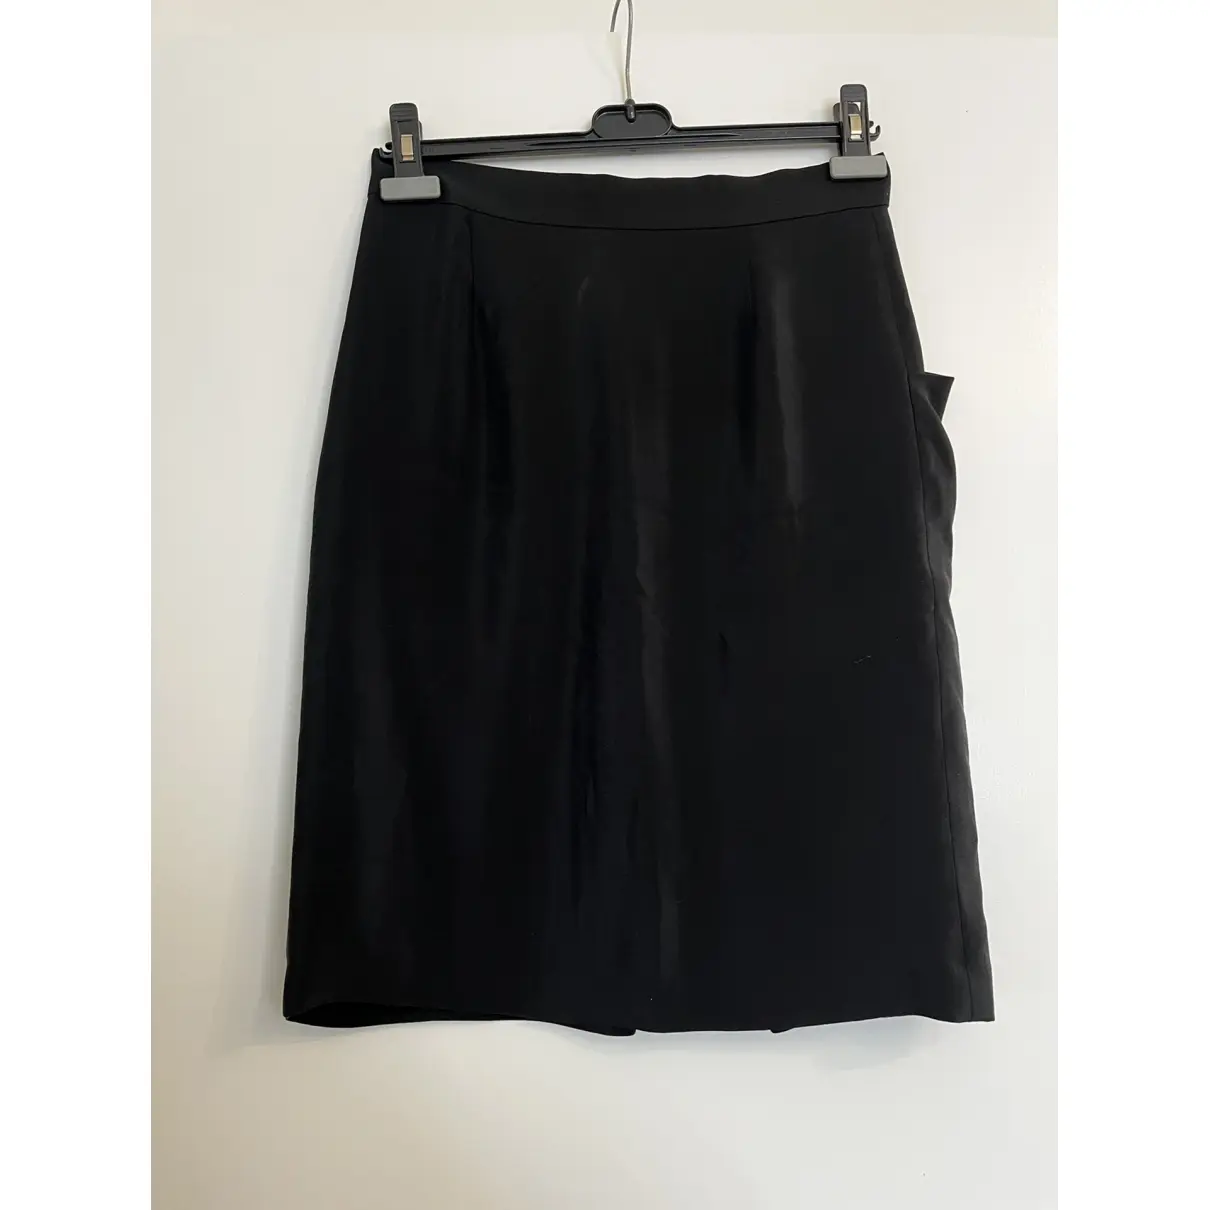 Buy Joseph Silk mid-length skirt online